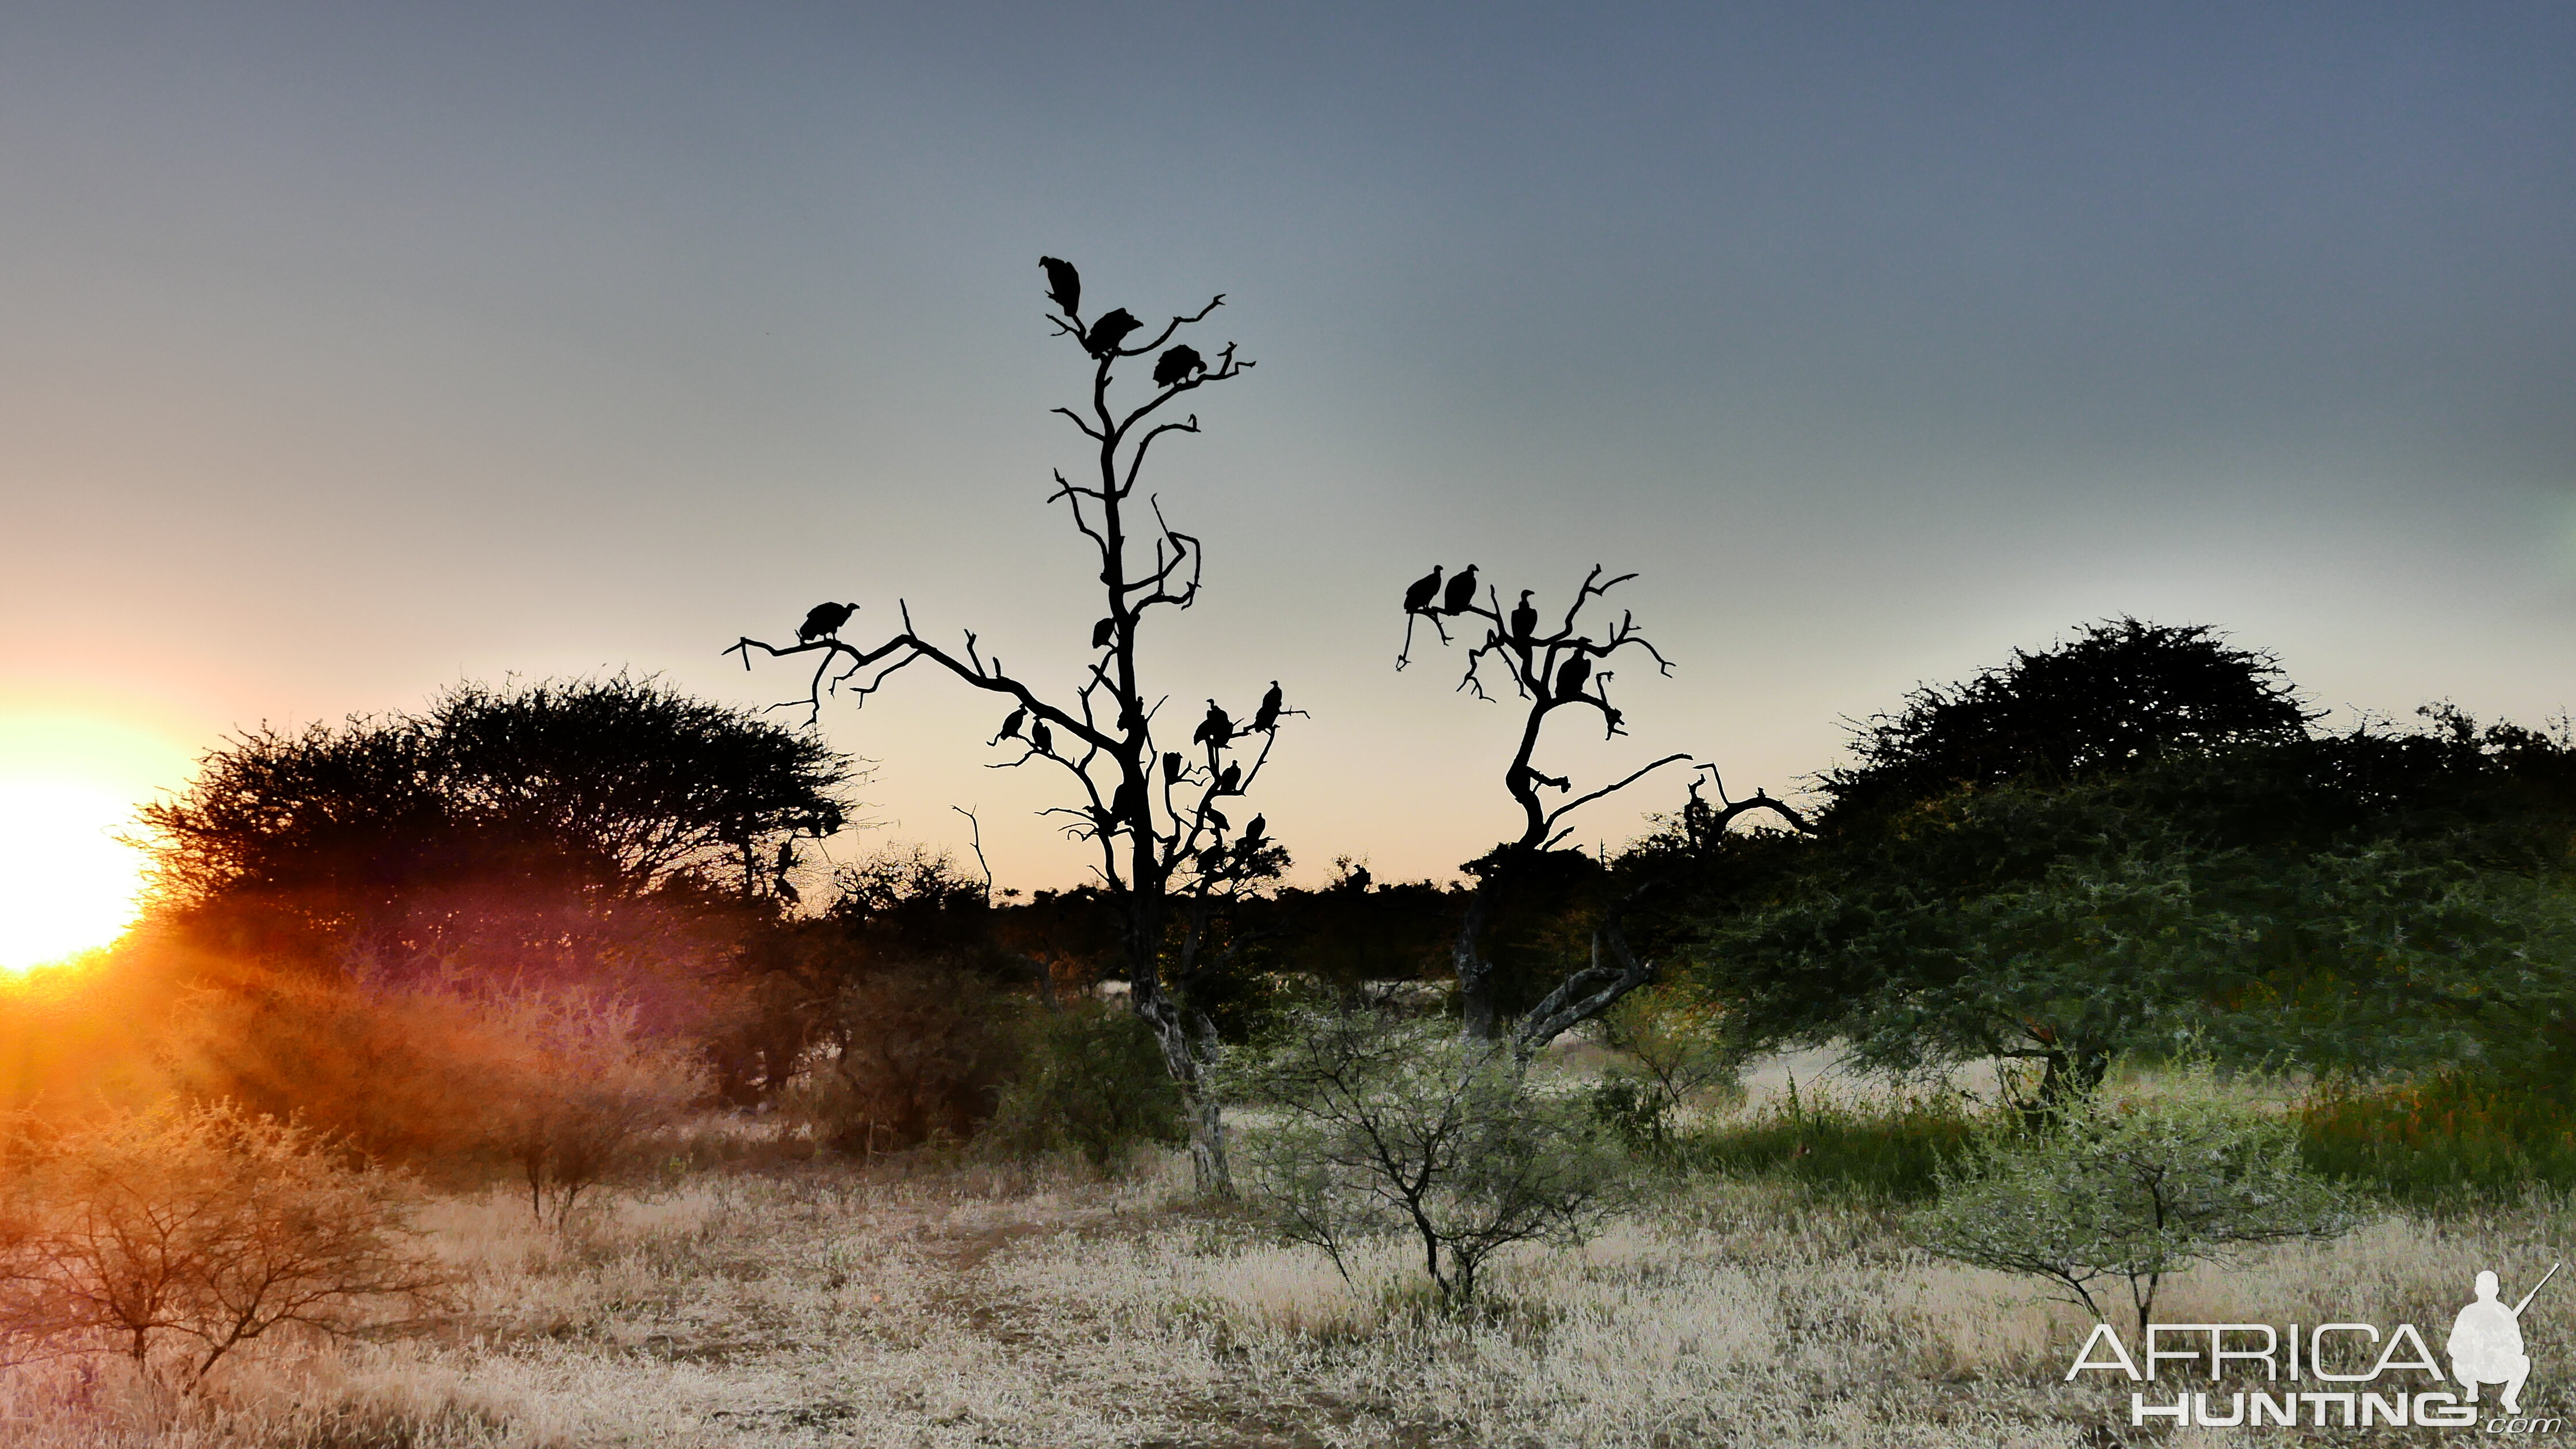 Sunset near the Zimbabwe, Botswana border